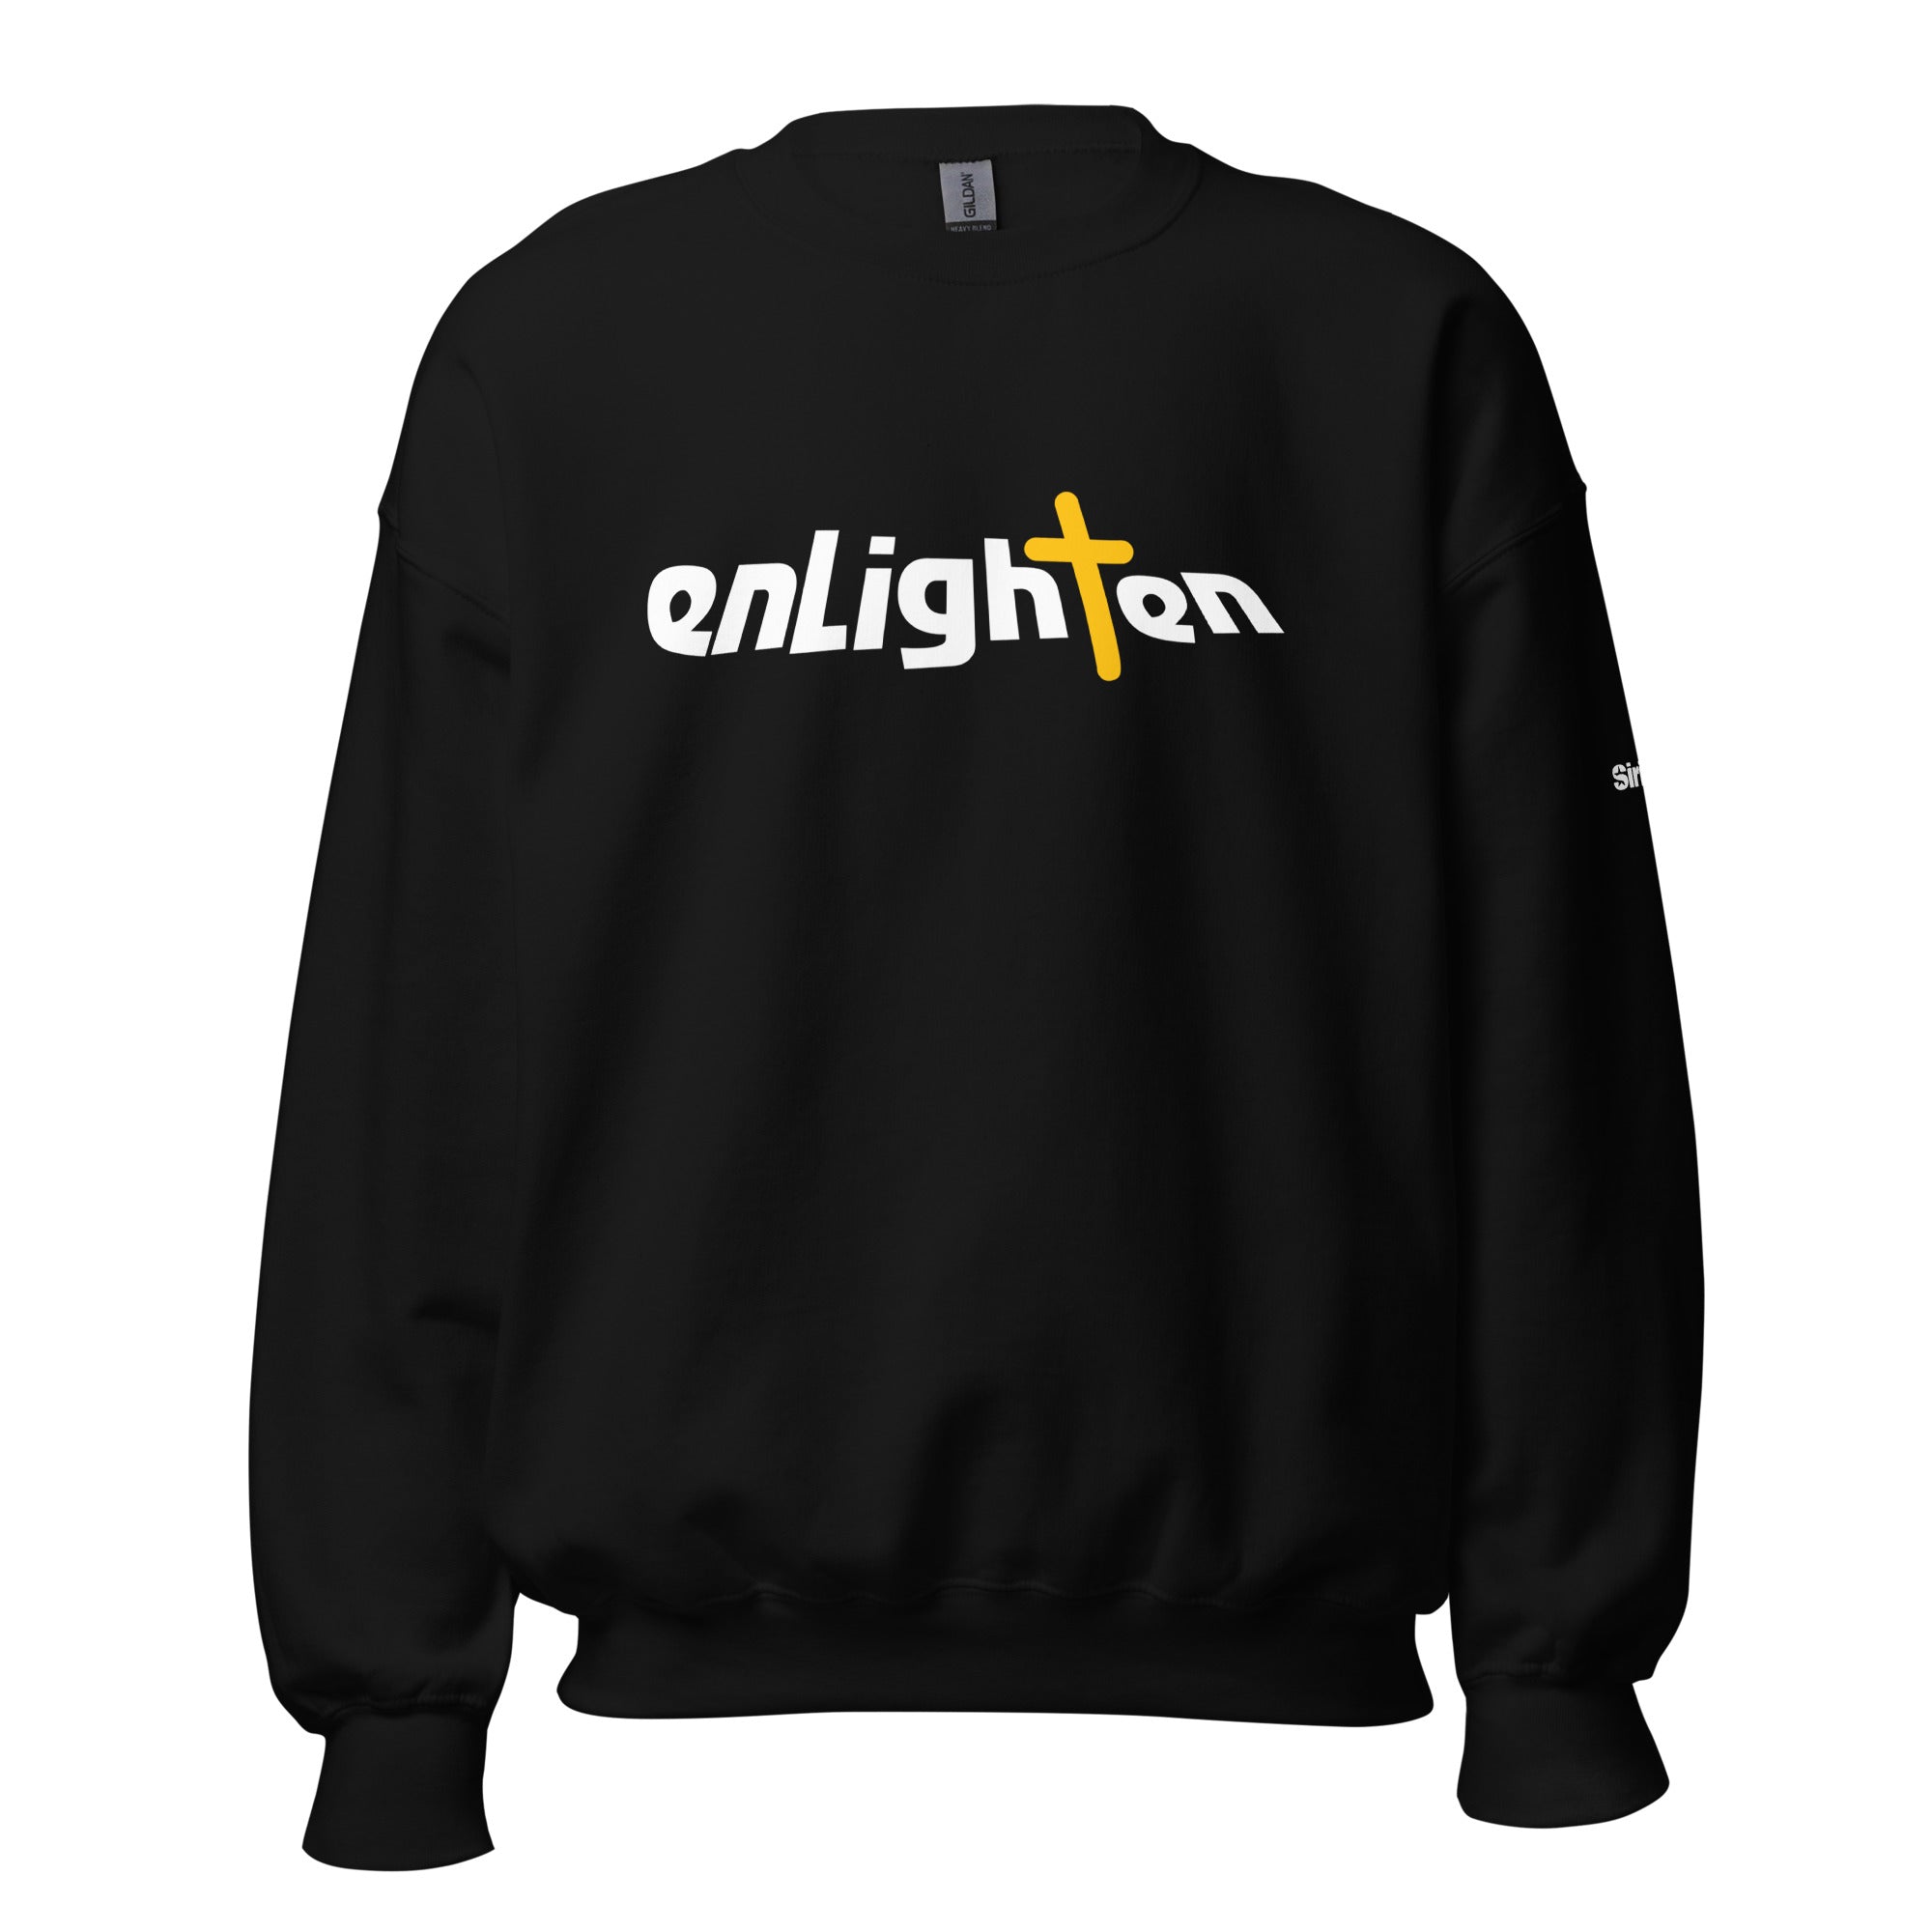 Enlighten: Sweatshirt (Black)